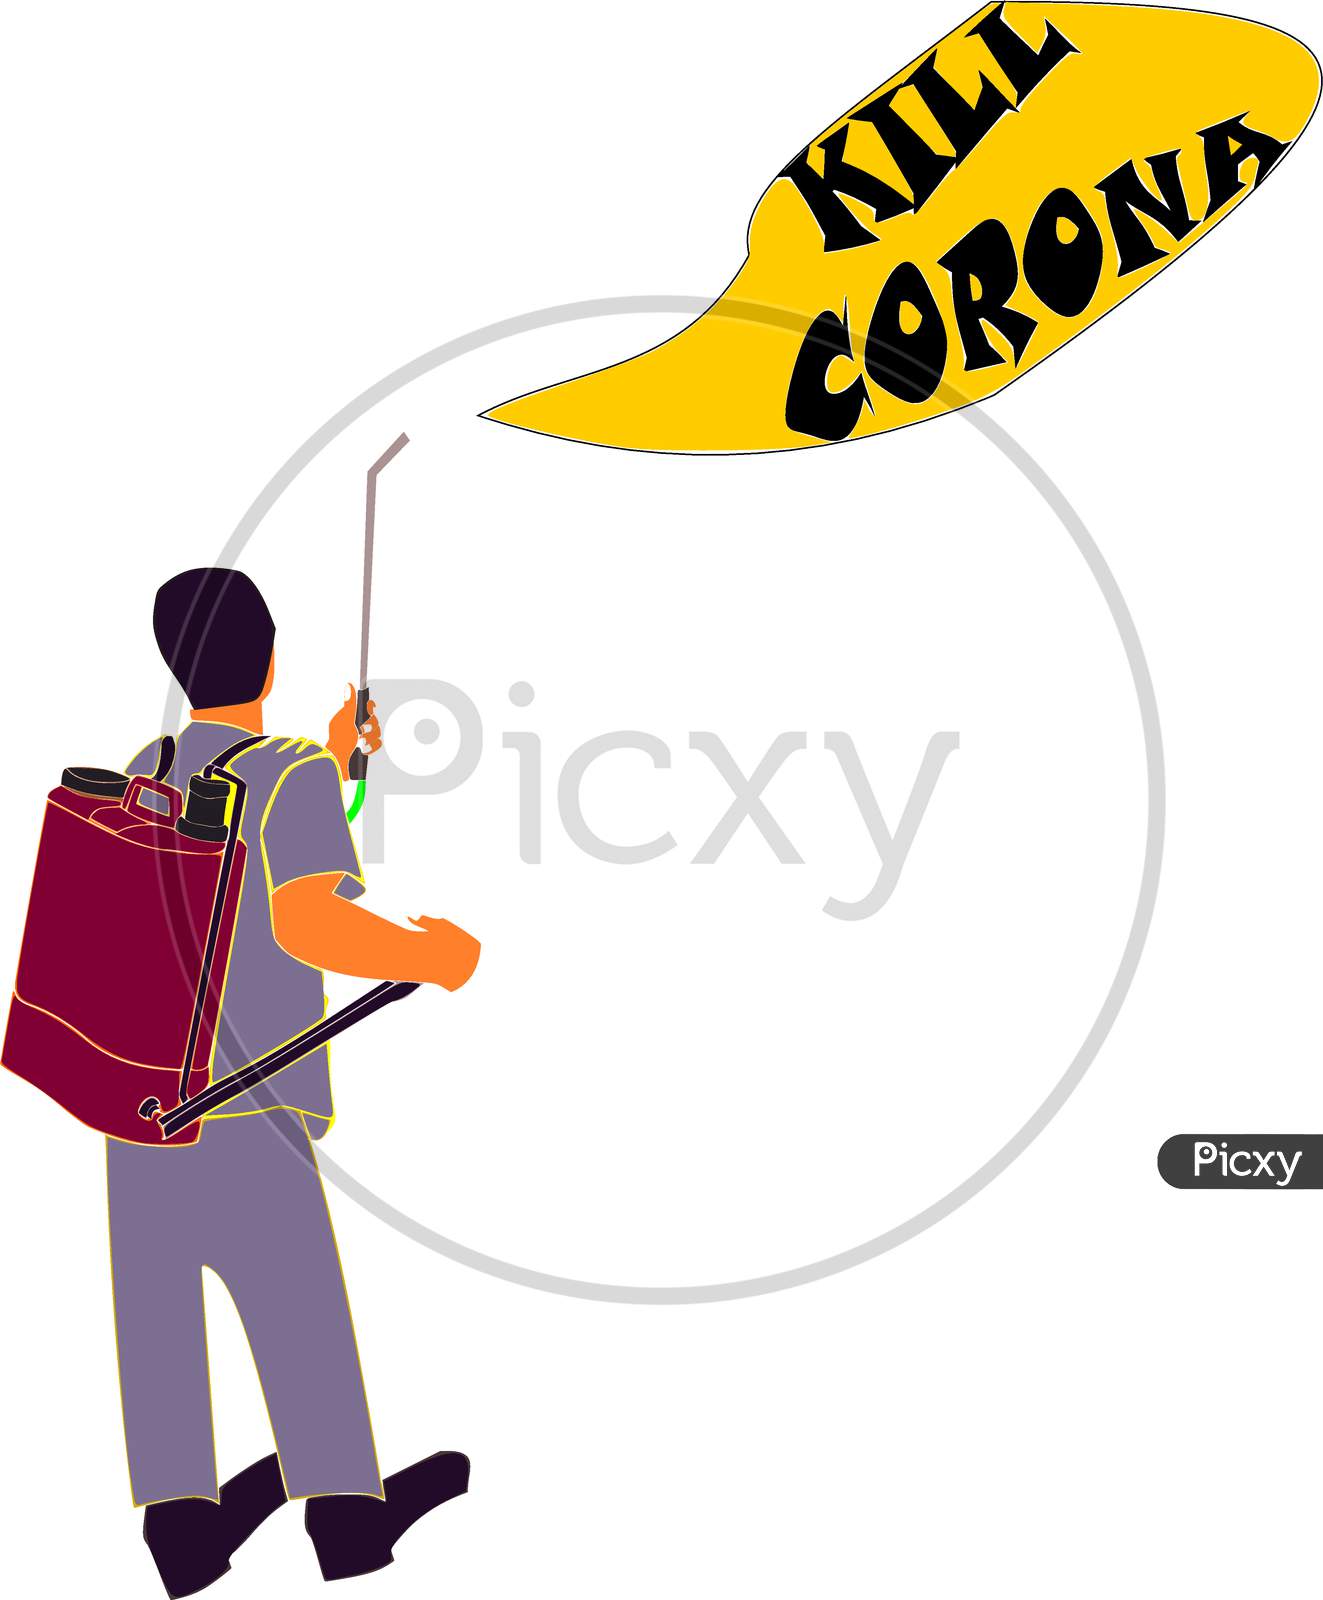 Cartoon Man Sanitizing Corona Virus Infection Illustration